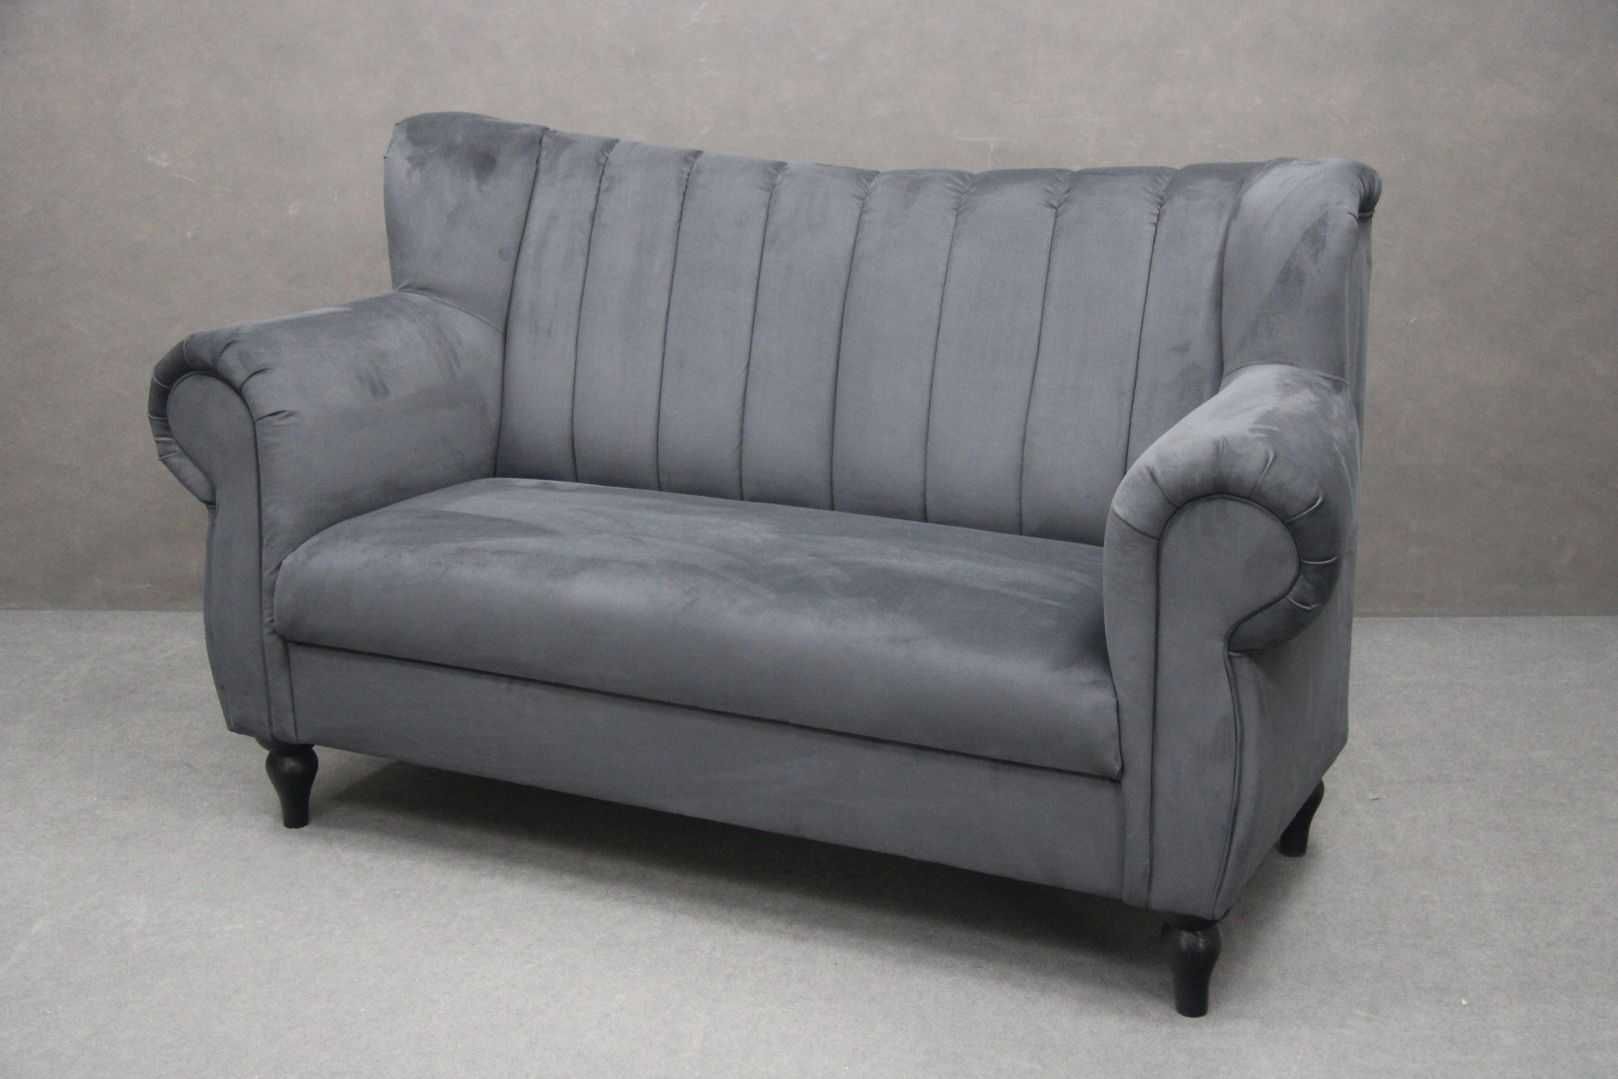 Sofa kanapa BAROCK grafitowa nowa wypoczynek 170 cm BGM24.pl B 3497